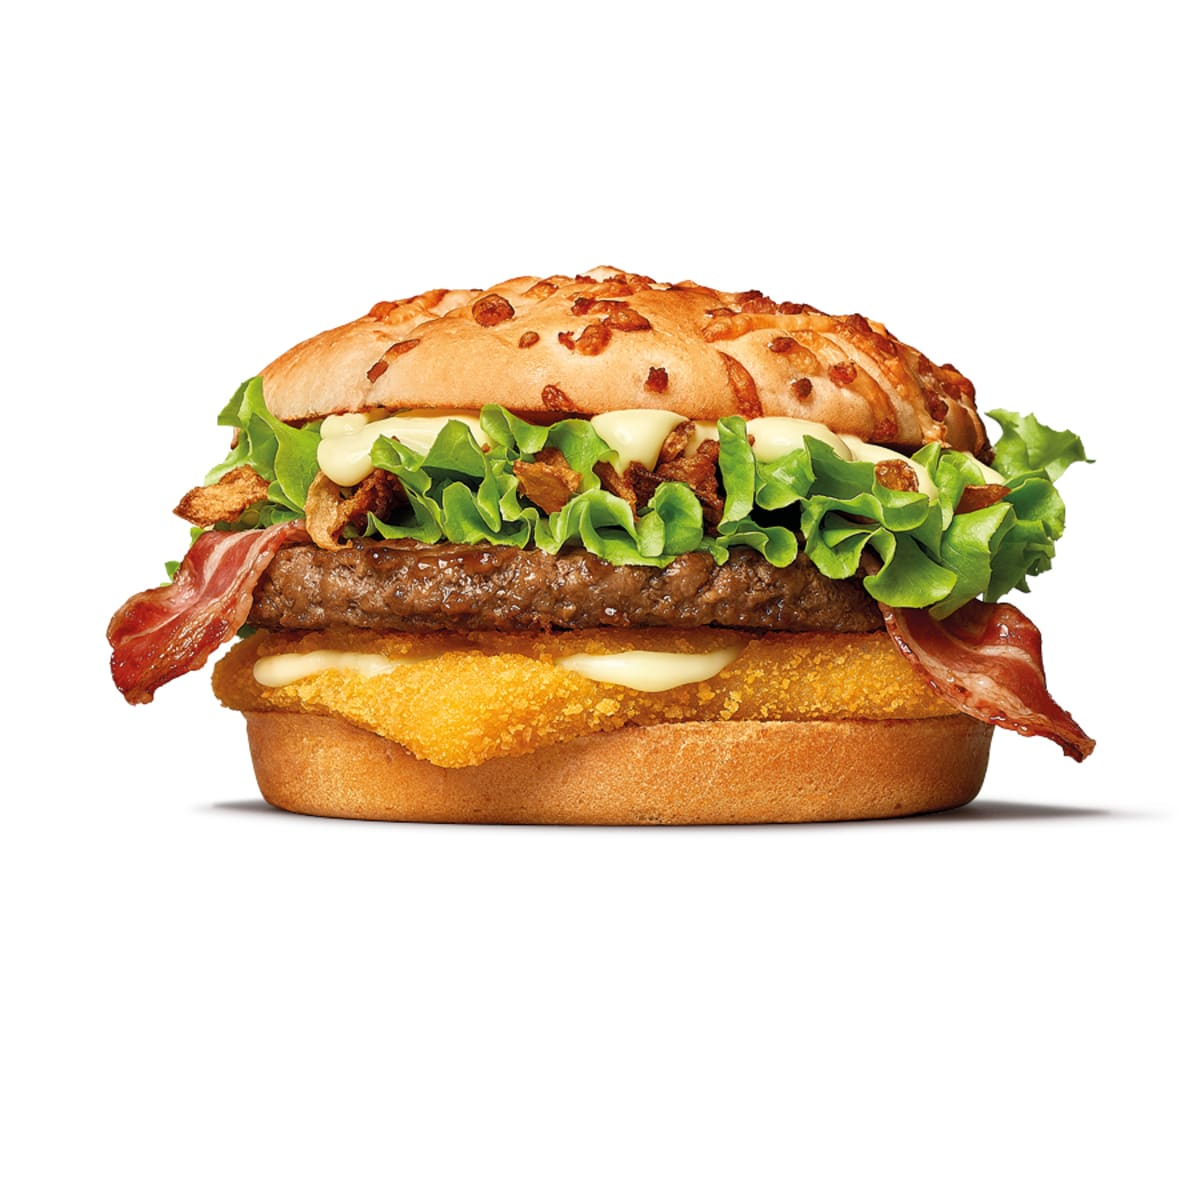  Cheese King To se to táááhlo, co? Ale Cheese King je konečně zpět. Pořádný burger s plátkem hovězího, smaženým eidamem, salátem, restovanou cibulkou a sýrovou omáčkou.